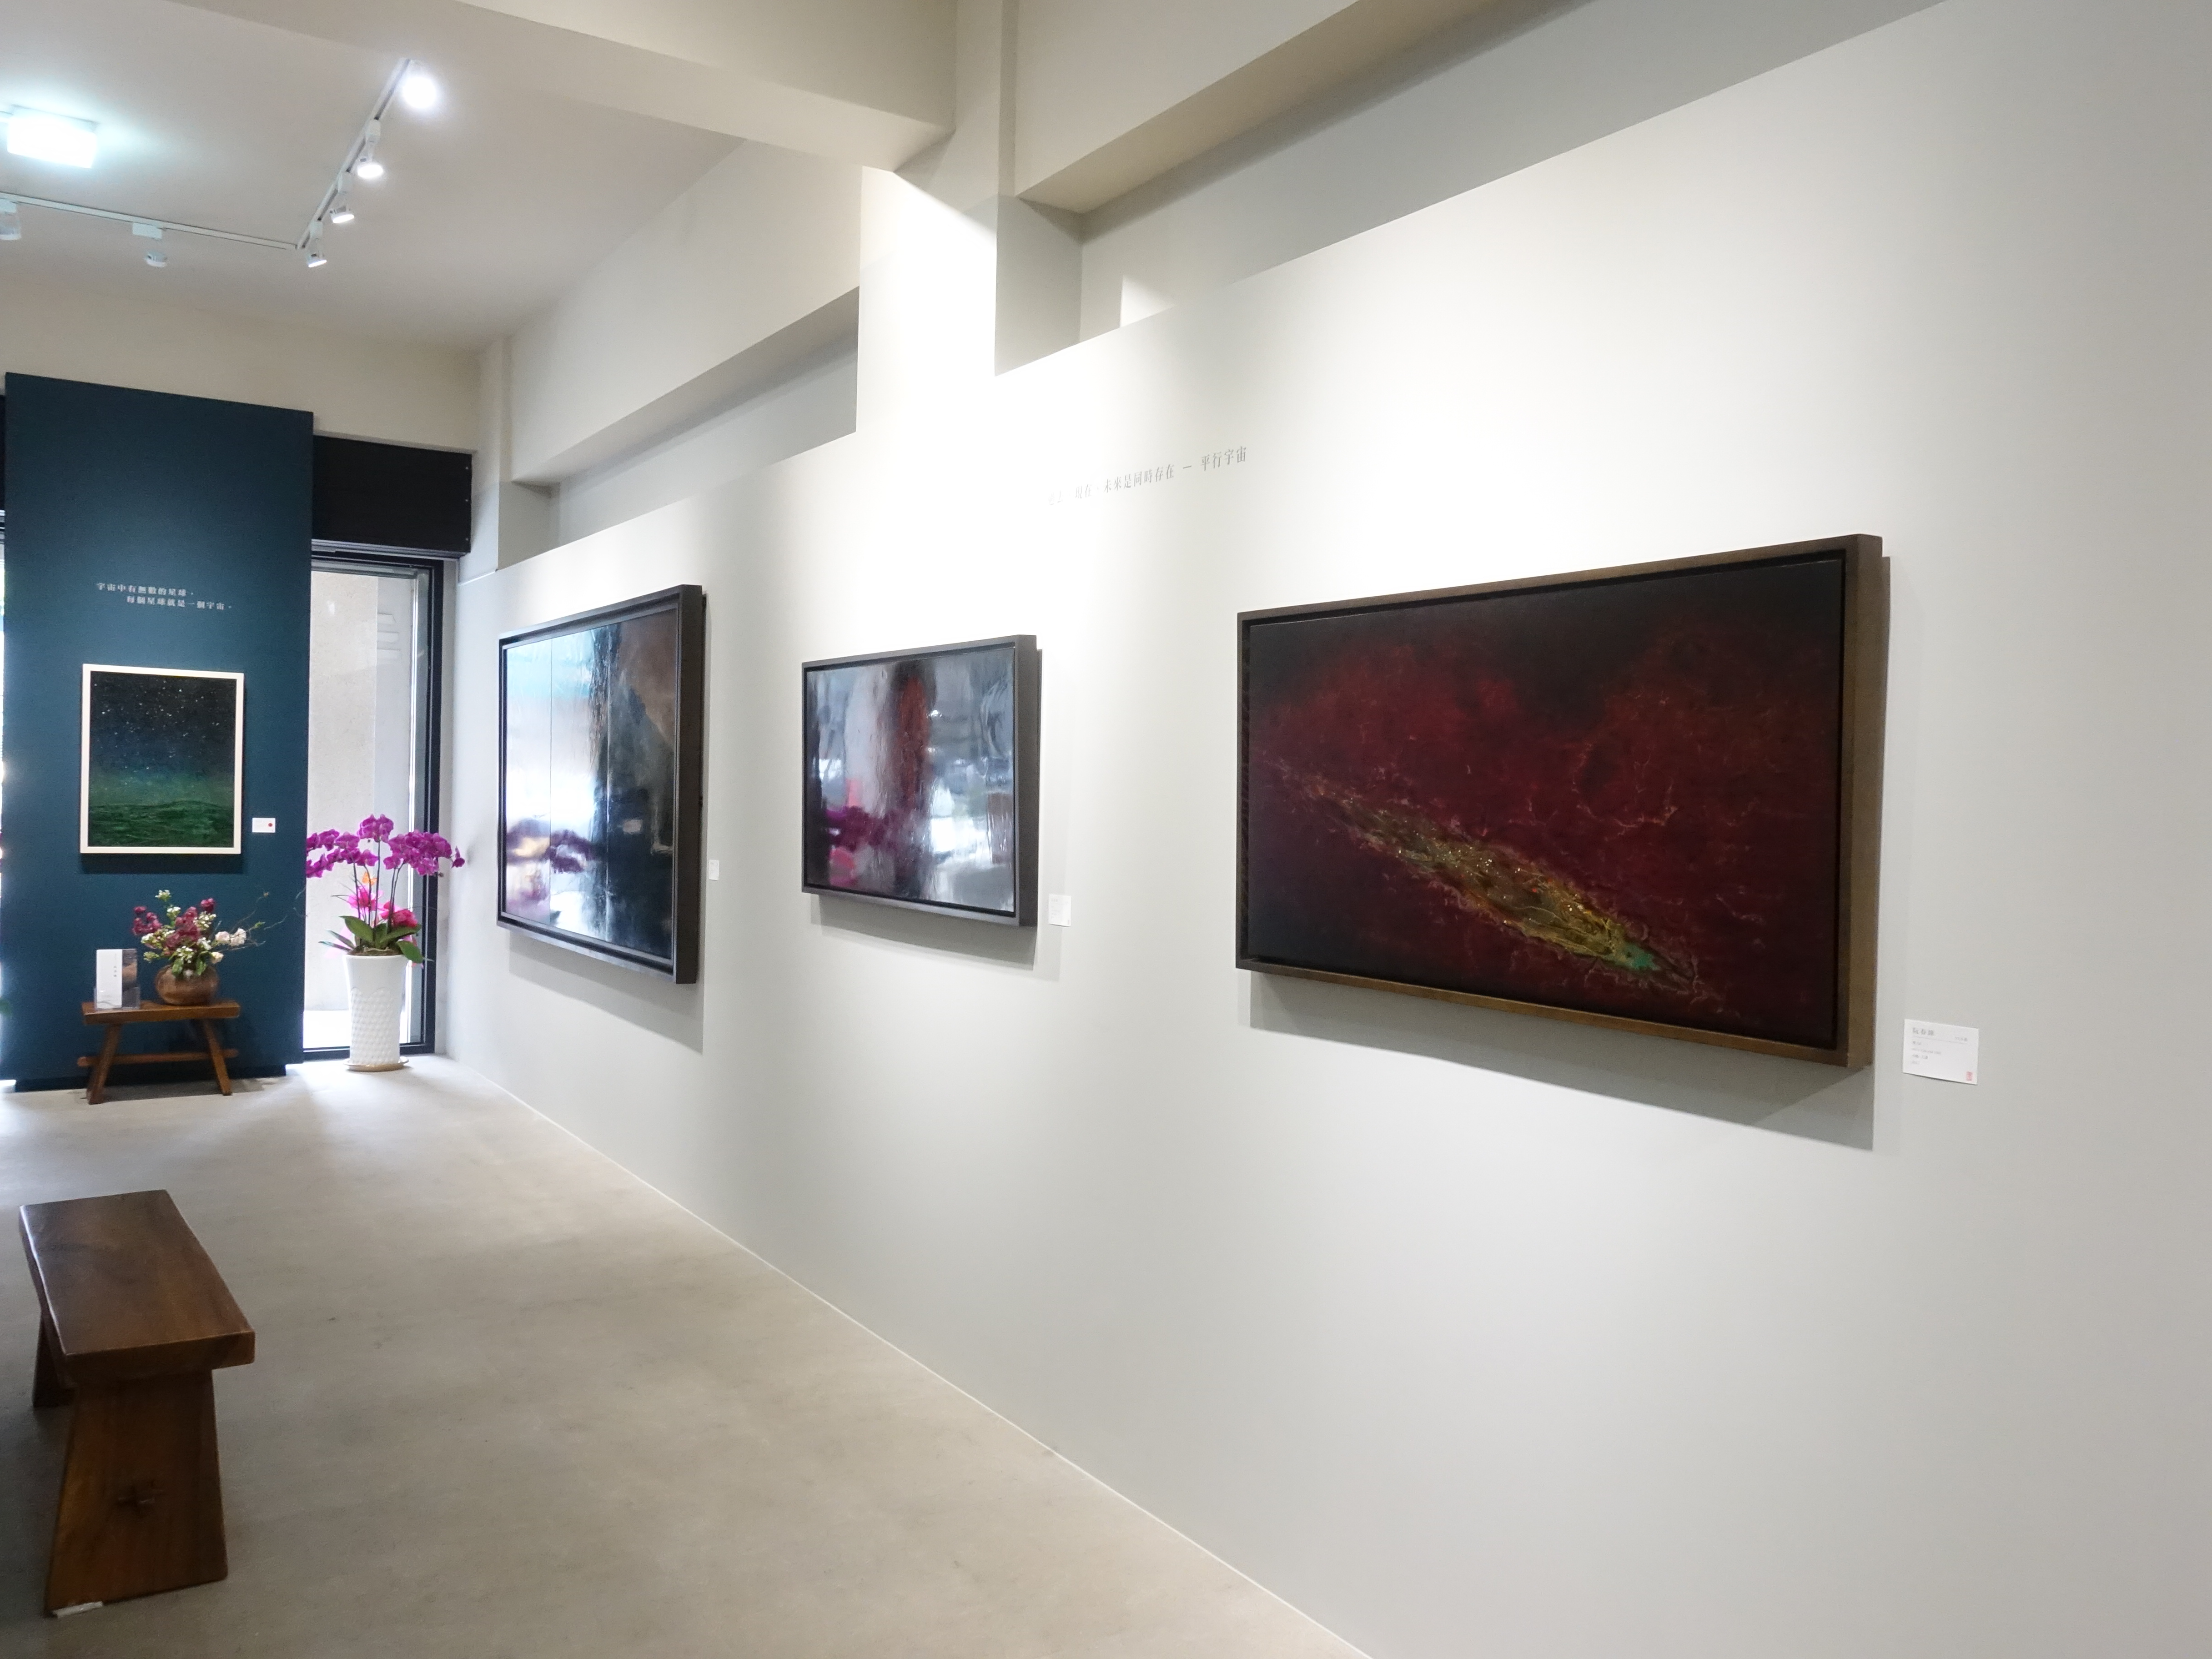 正觀藝術展出越南藝術家阮春綠台灣首展《微塵系列》。